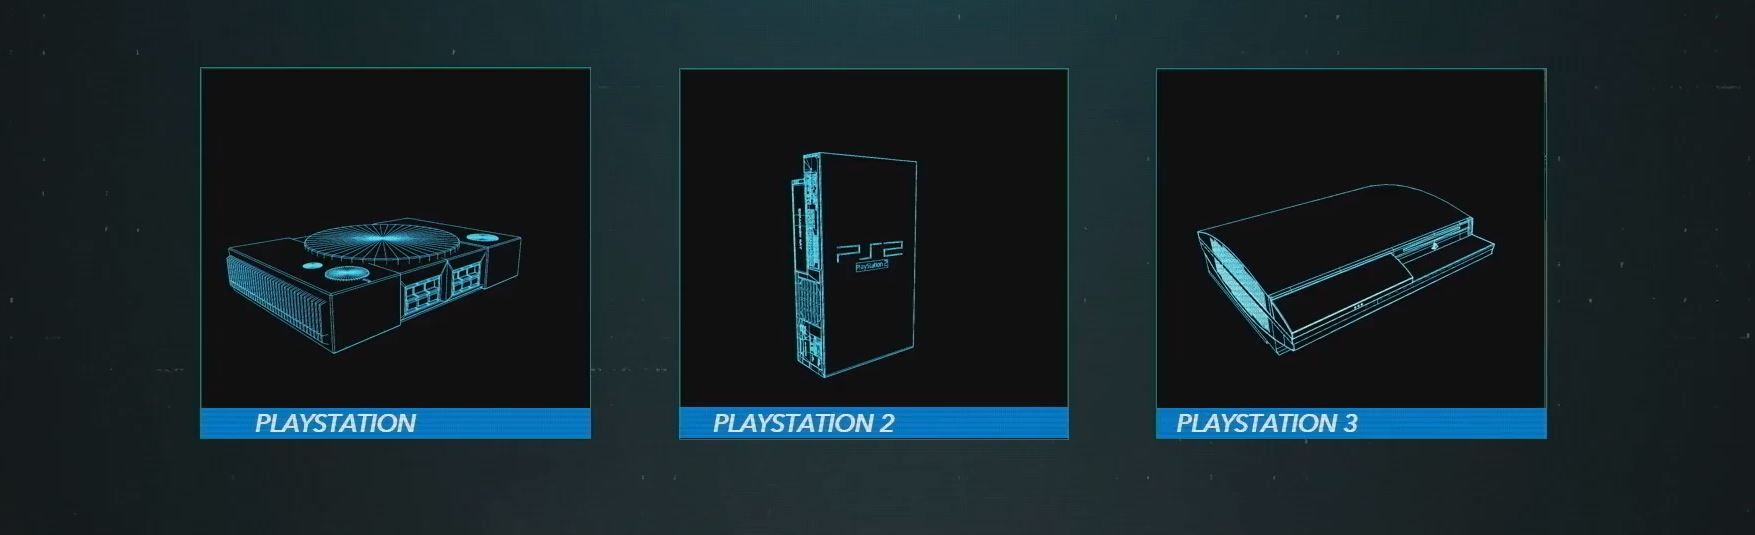 PlayStation 5 teknik özellikleri resmi olarak açıklandı